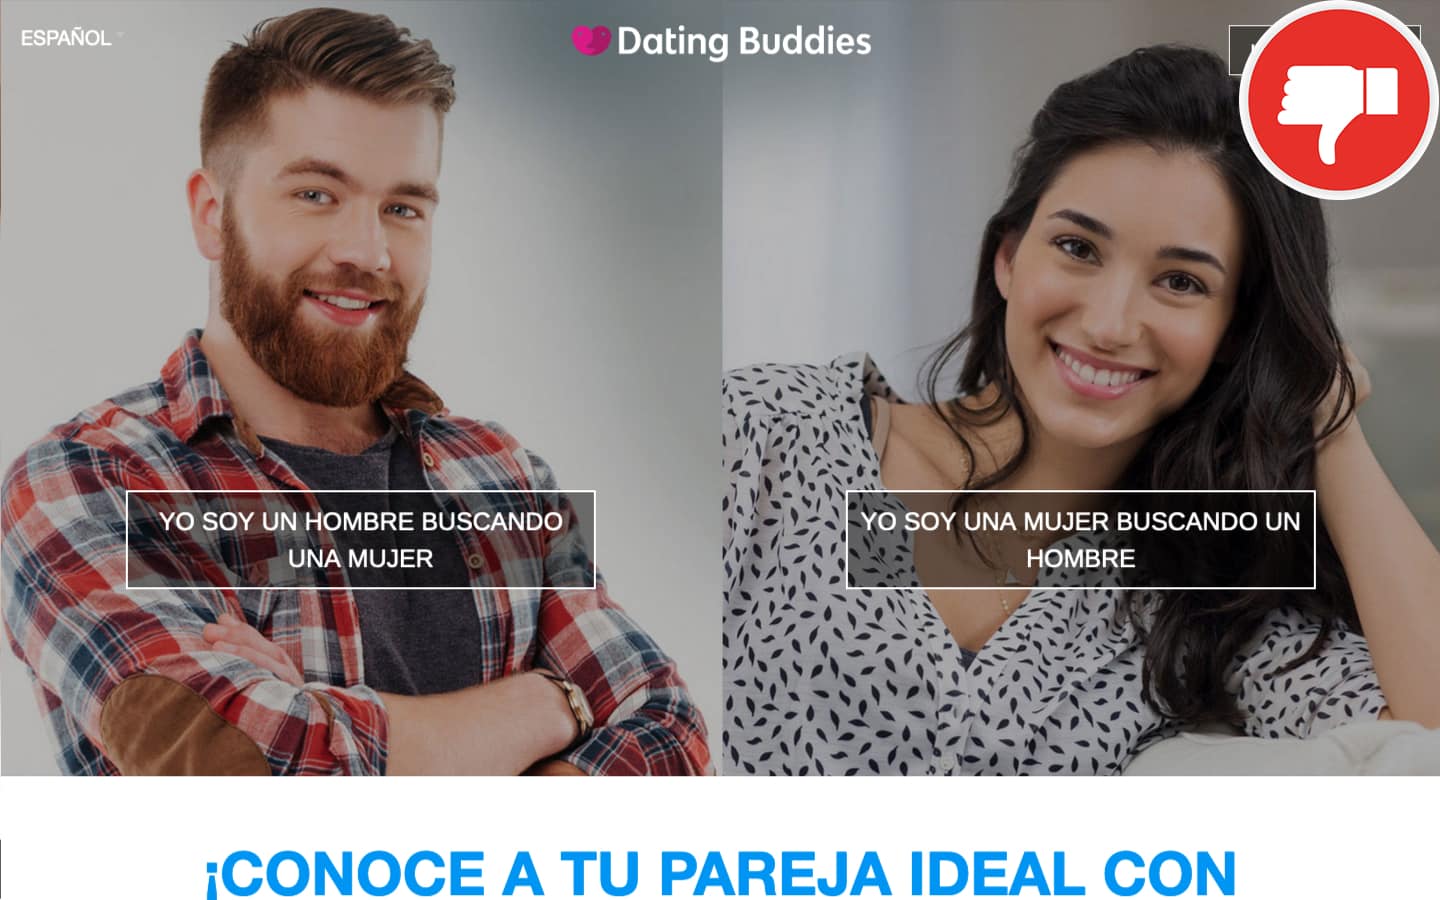 DatingBuddies.com Estafa